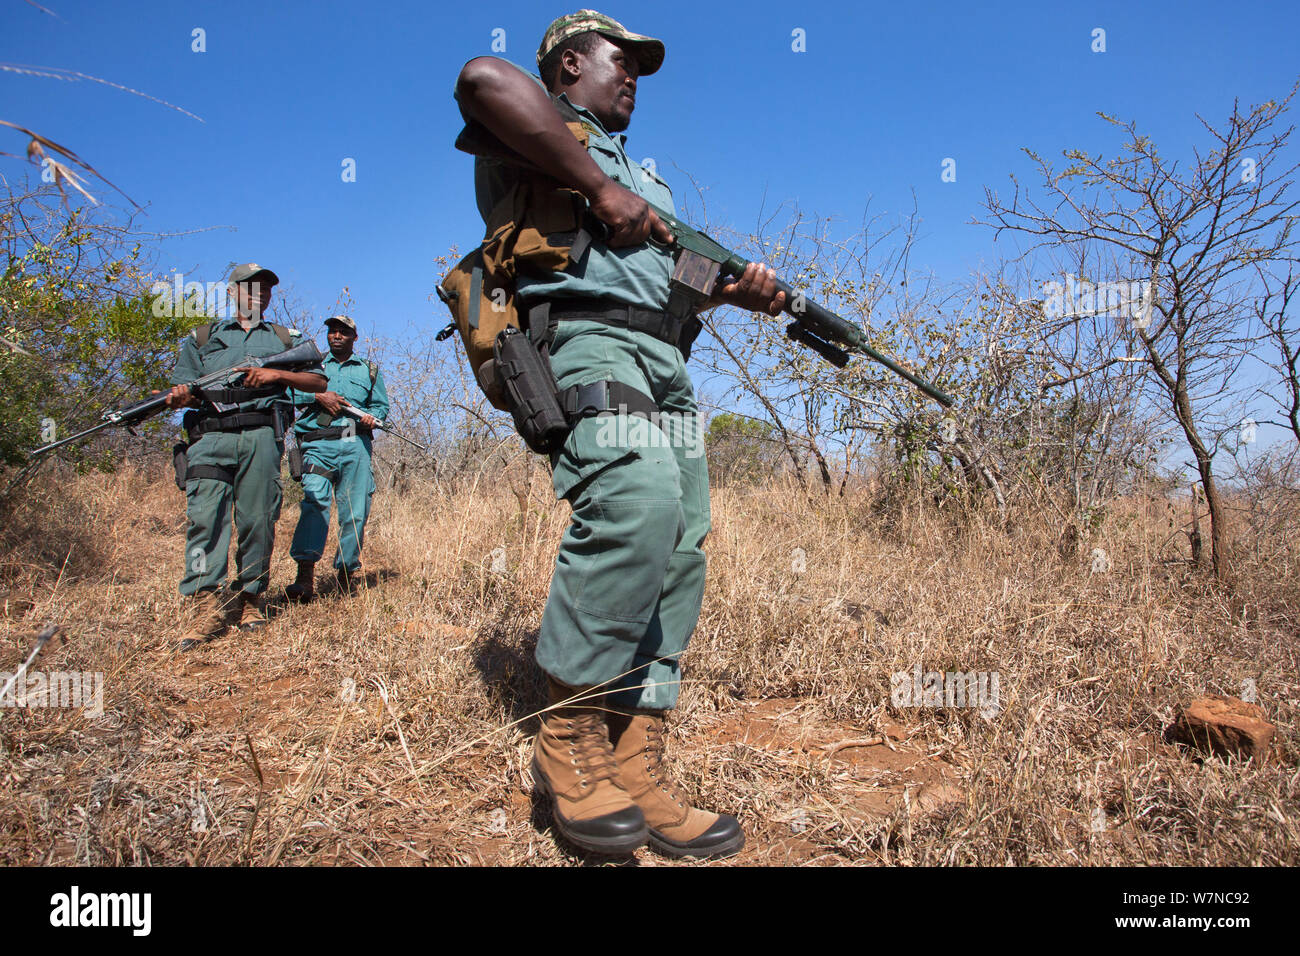 Anti-poaching unit on patrol in the bush, led by Sibongiseni Kunene, Ezemvelo KZN Wildlife, iMfolozi game reserve, KwaZulu-Natal, South Africa, June 2012